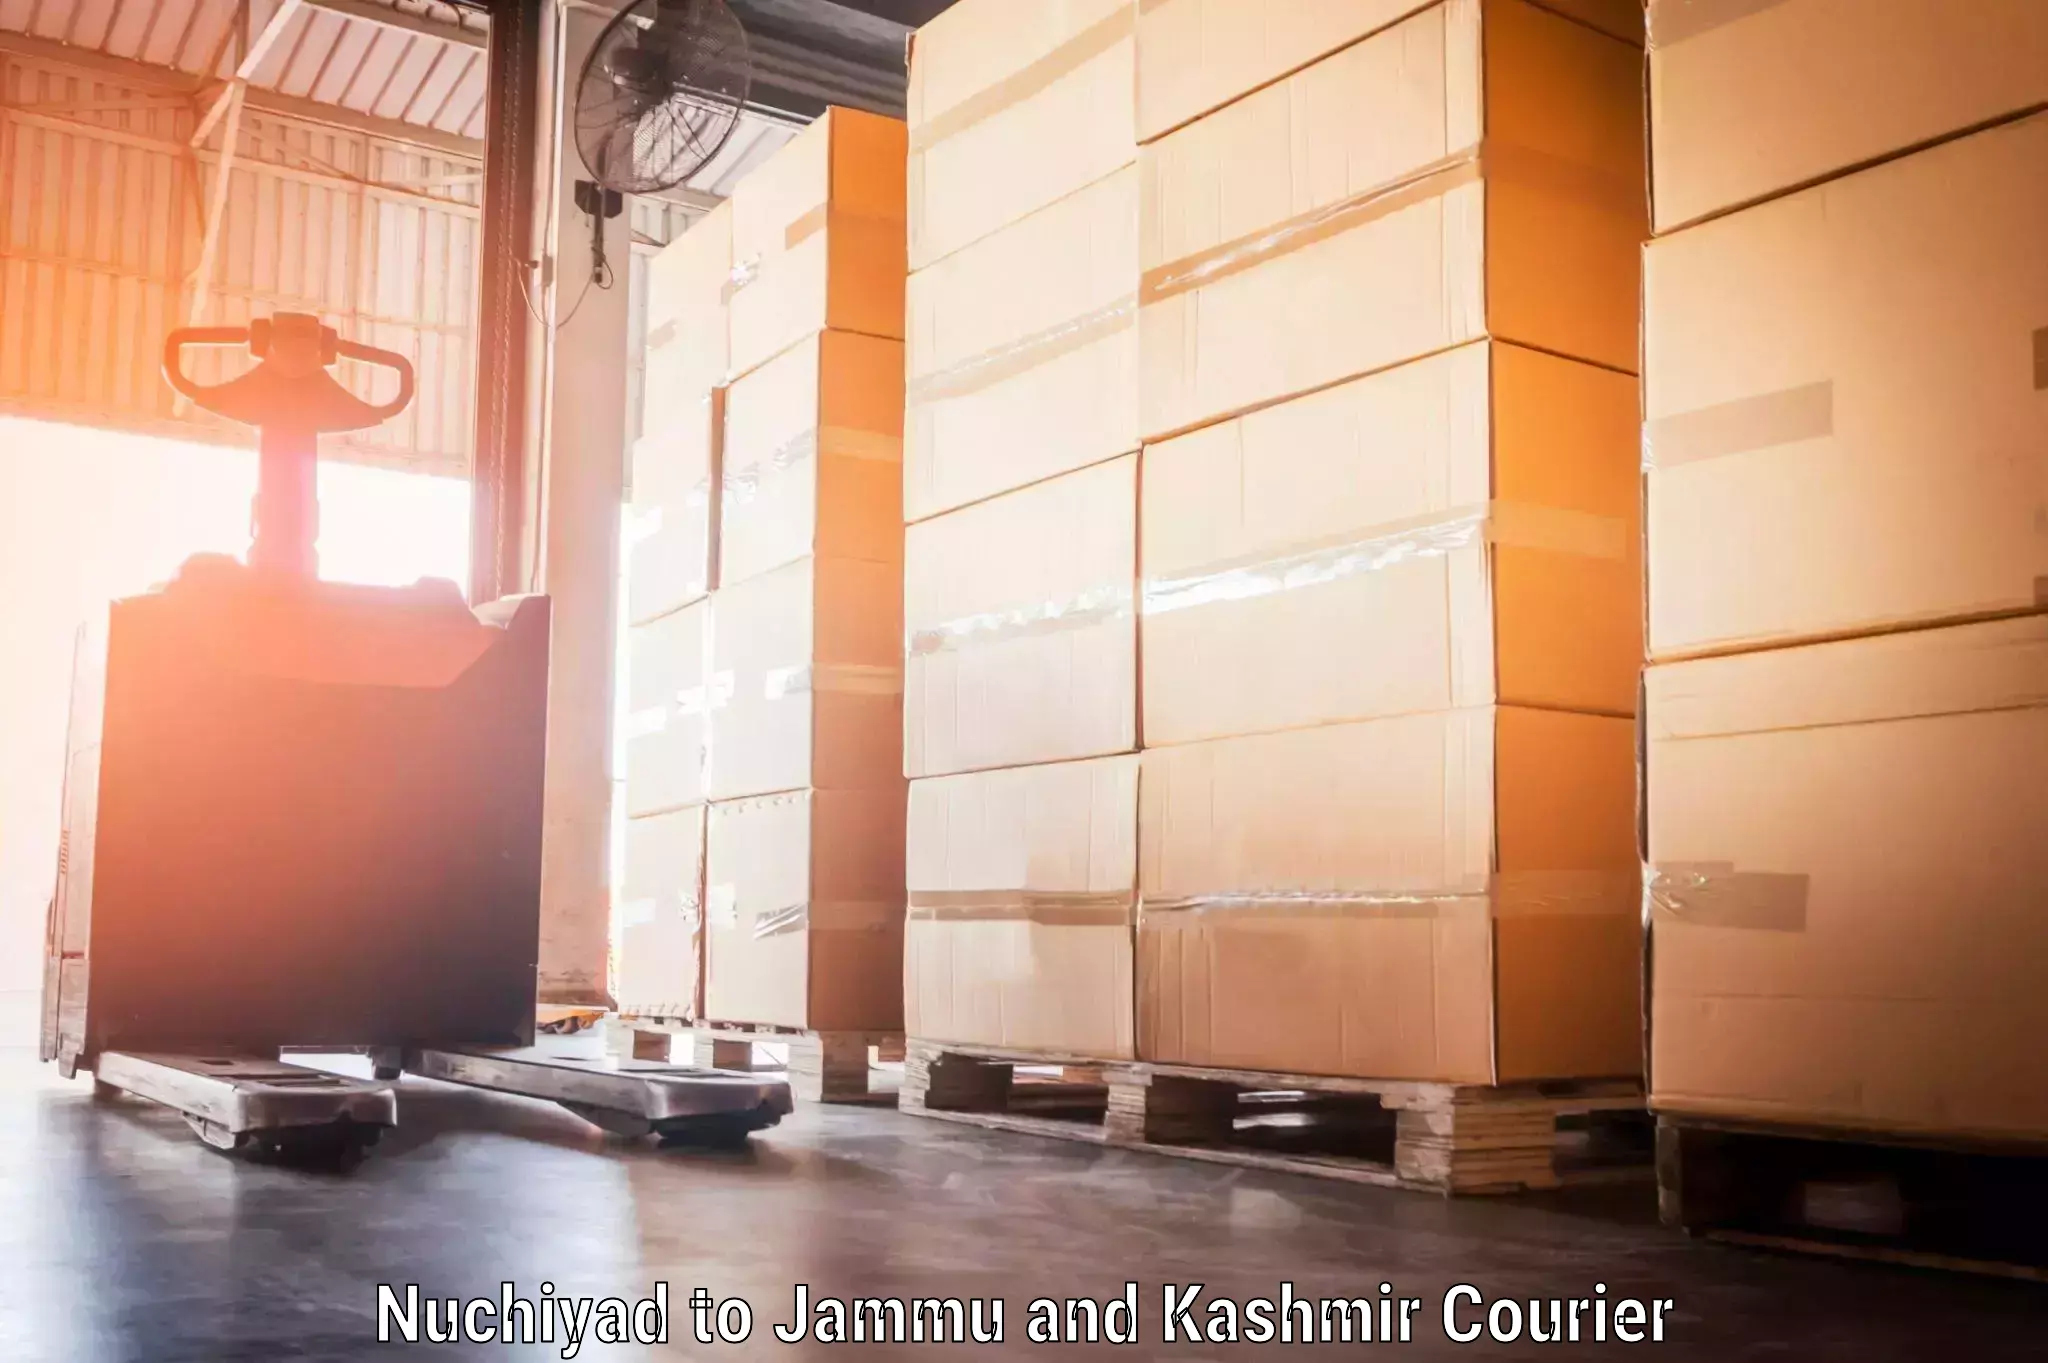 Baggage shipping advice Nuchiyad to Jammu and Kashmir